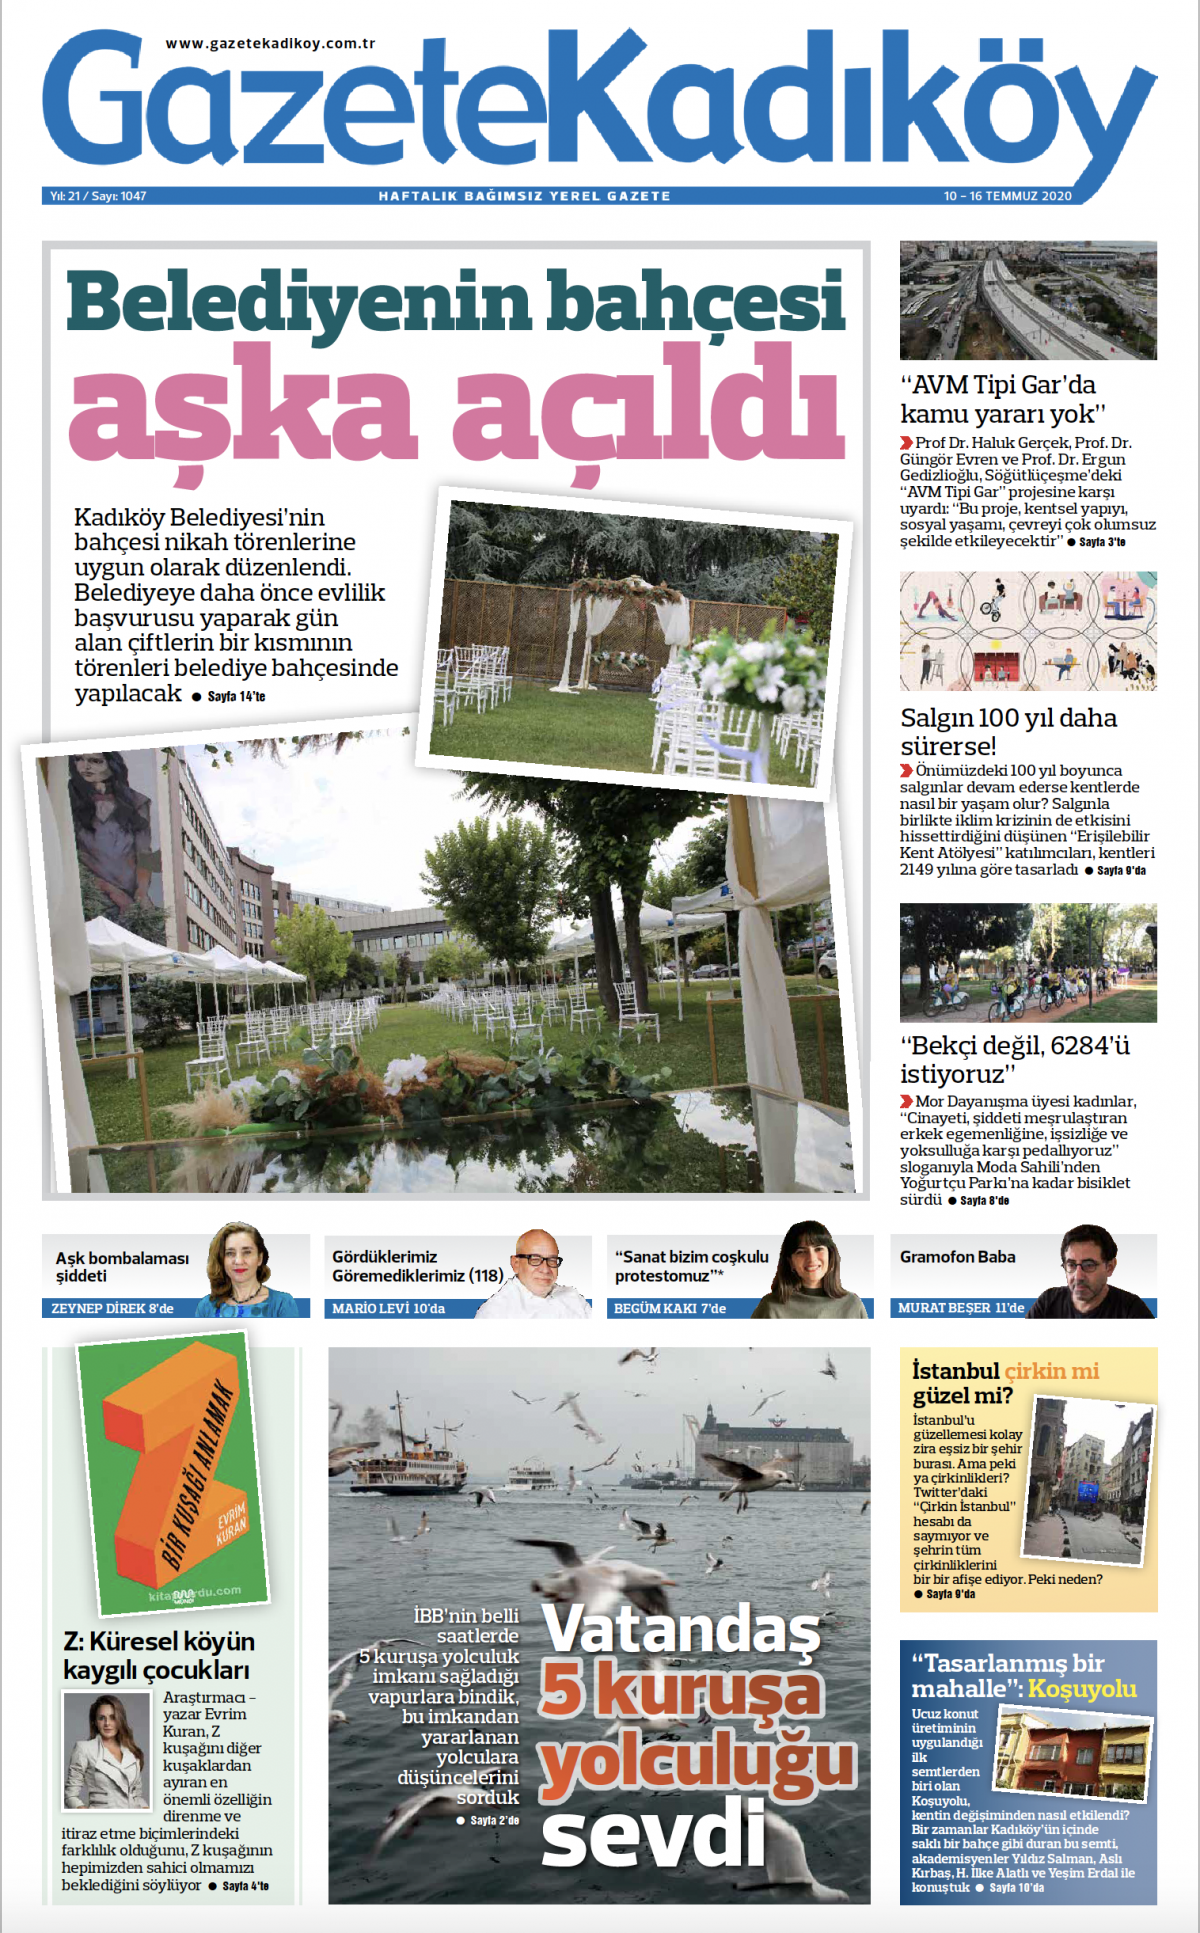 Gazete Kadıköy - 1047. Sayı